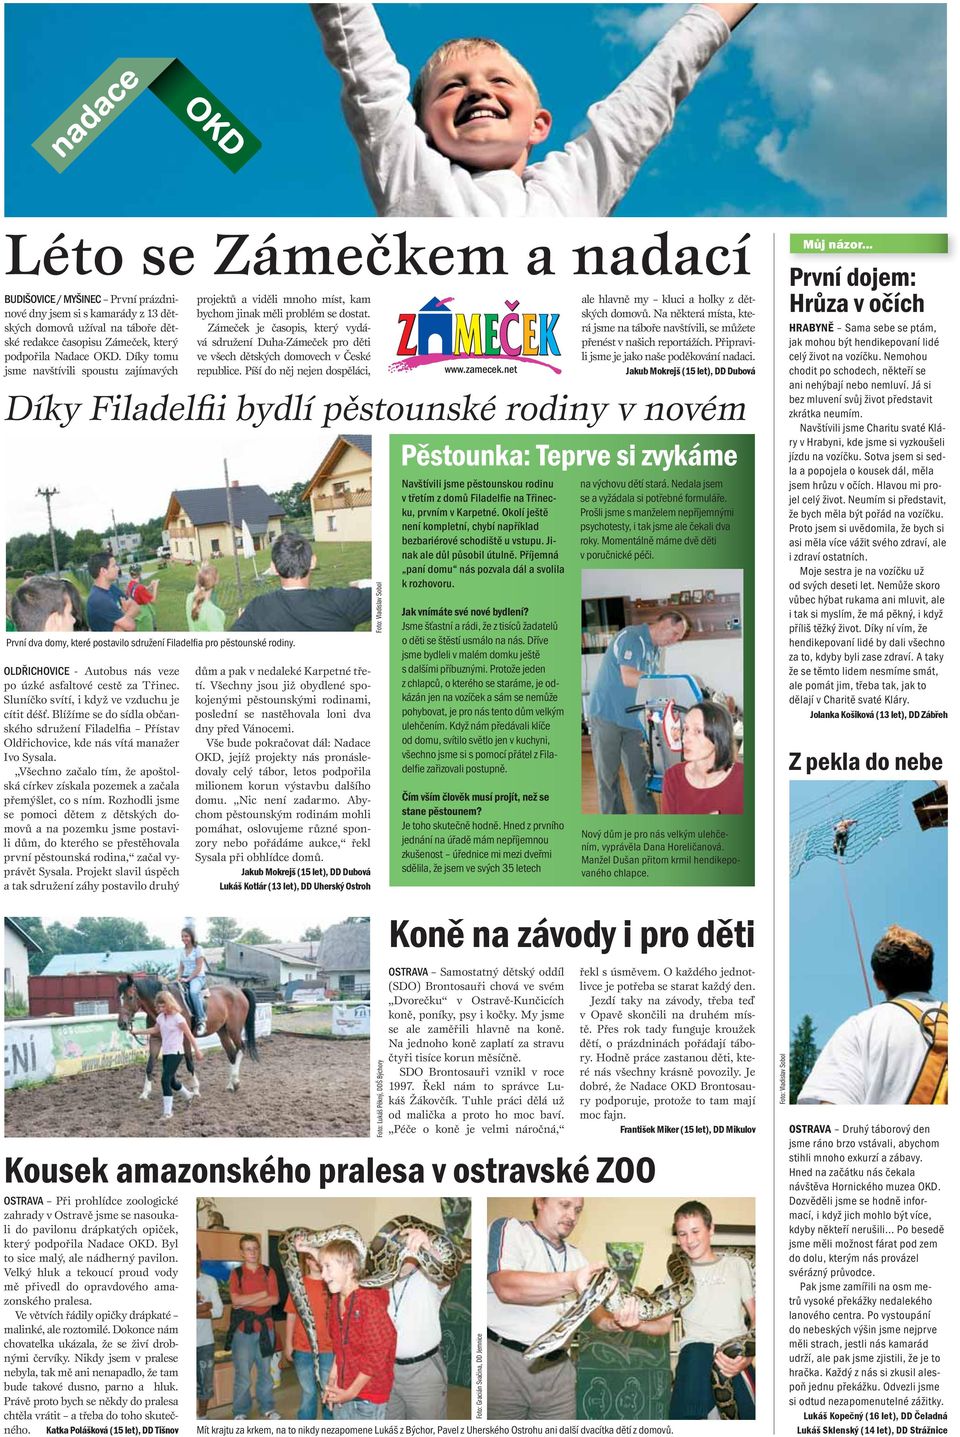 Zámeček je časopis, který vydává sdružení Duha-Zámeček pro děti ve všech dětských domovech v České republice. Píší do něj nejen dospěláci, ale hlavně my kluci a holky z dětských domovů.